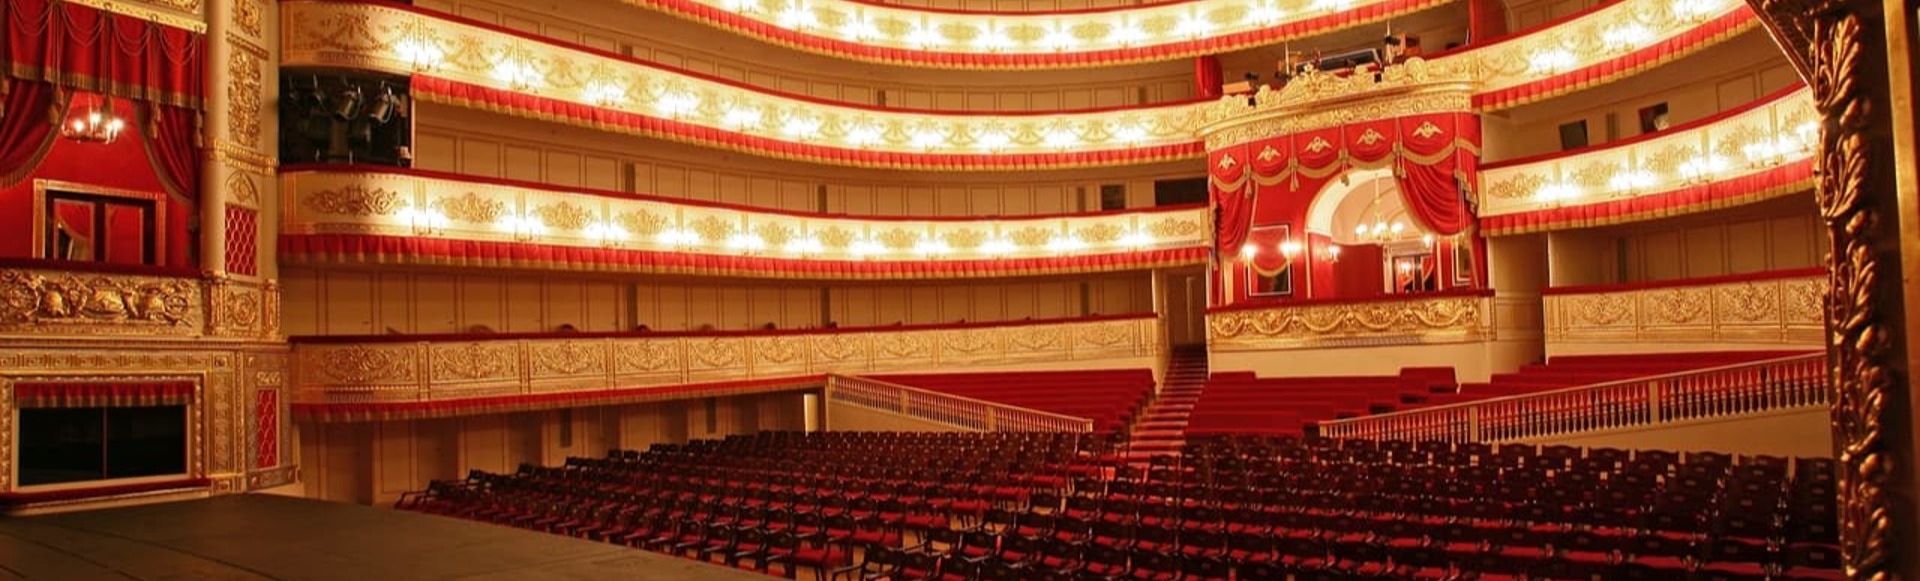 михайловский театр бельэтаж